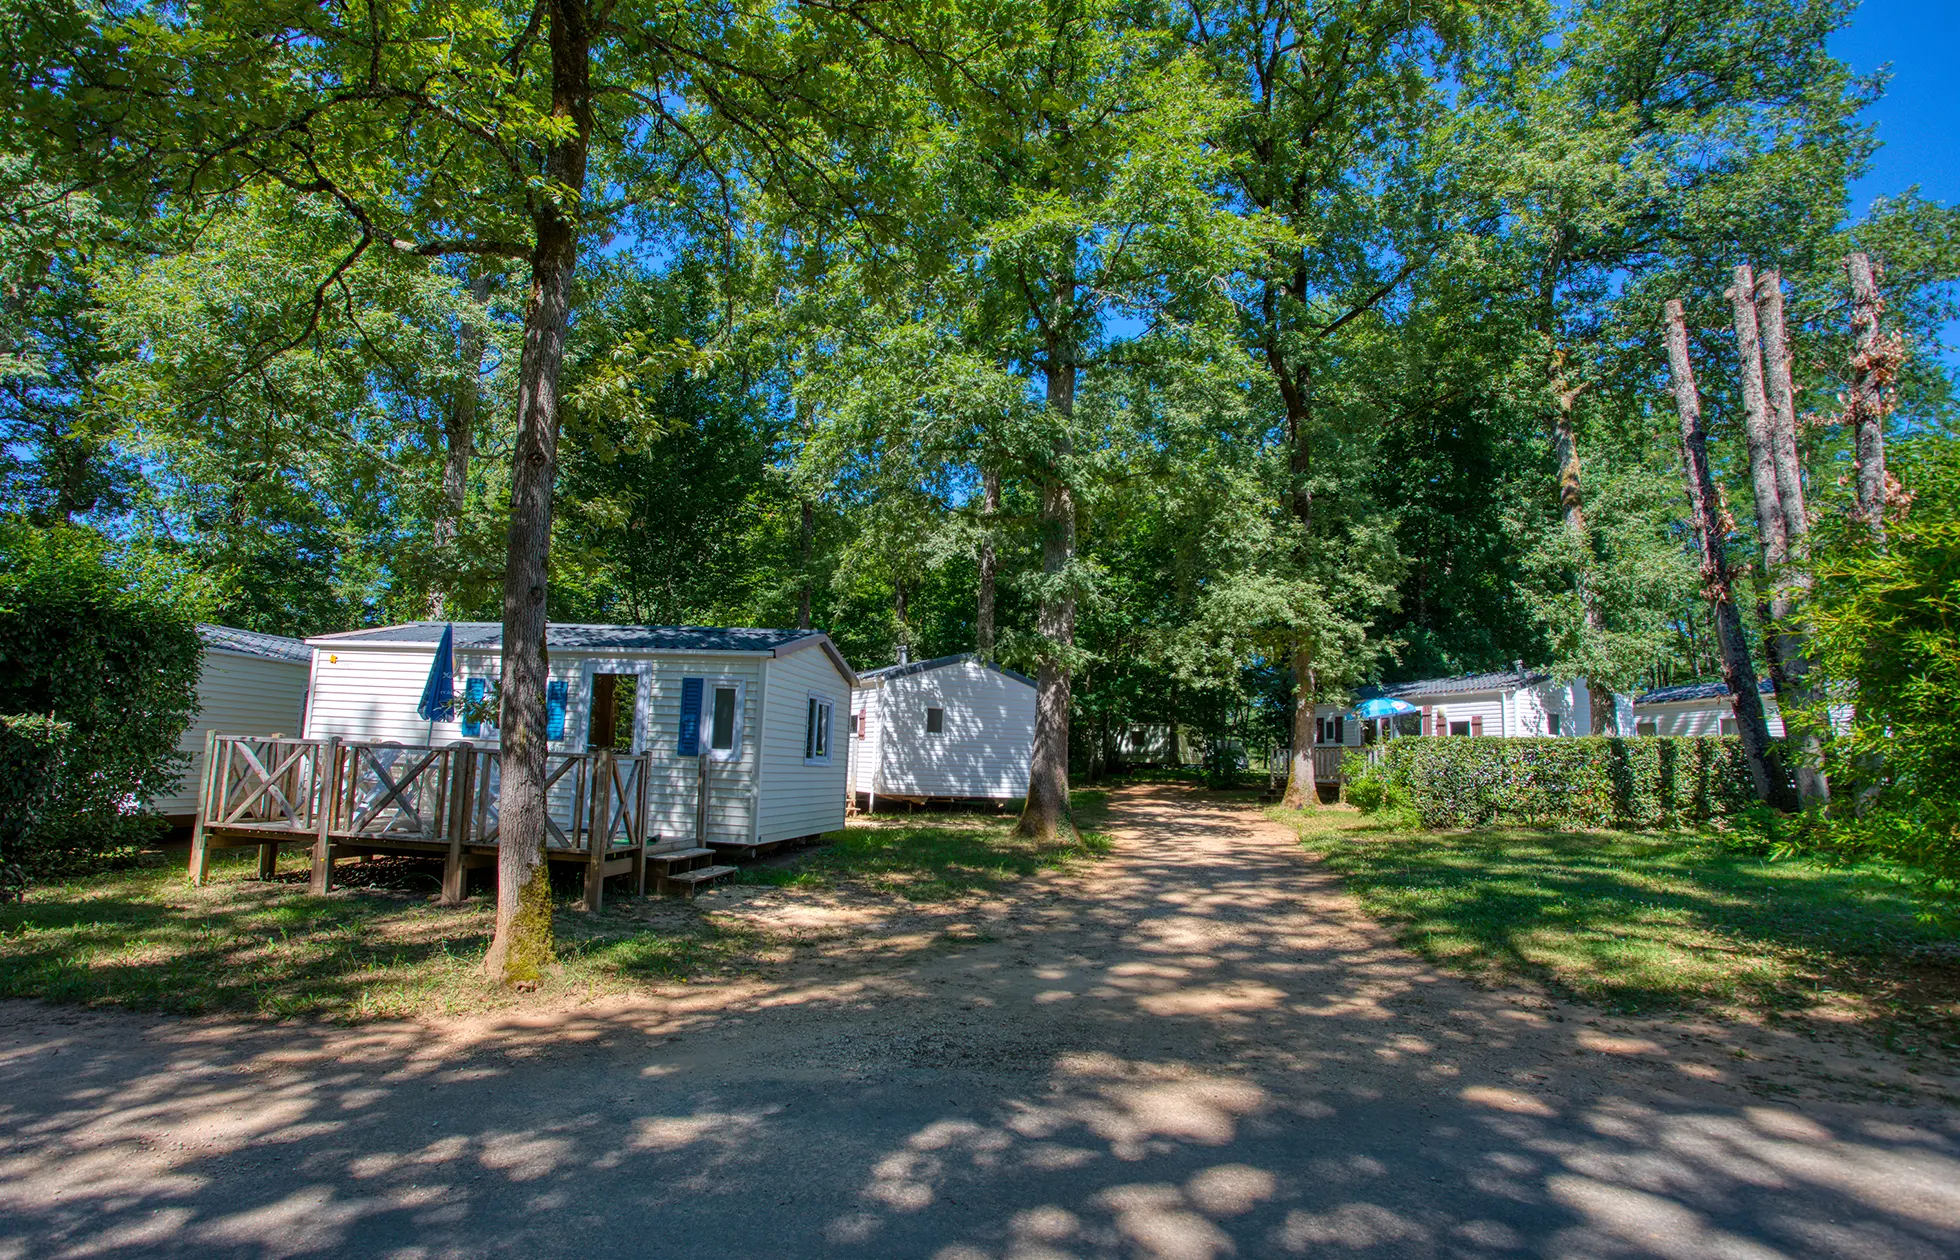 offer ' - '20 - Camping Les Nauves - Hébergement